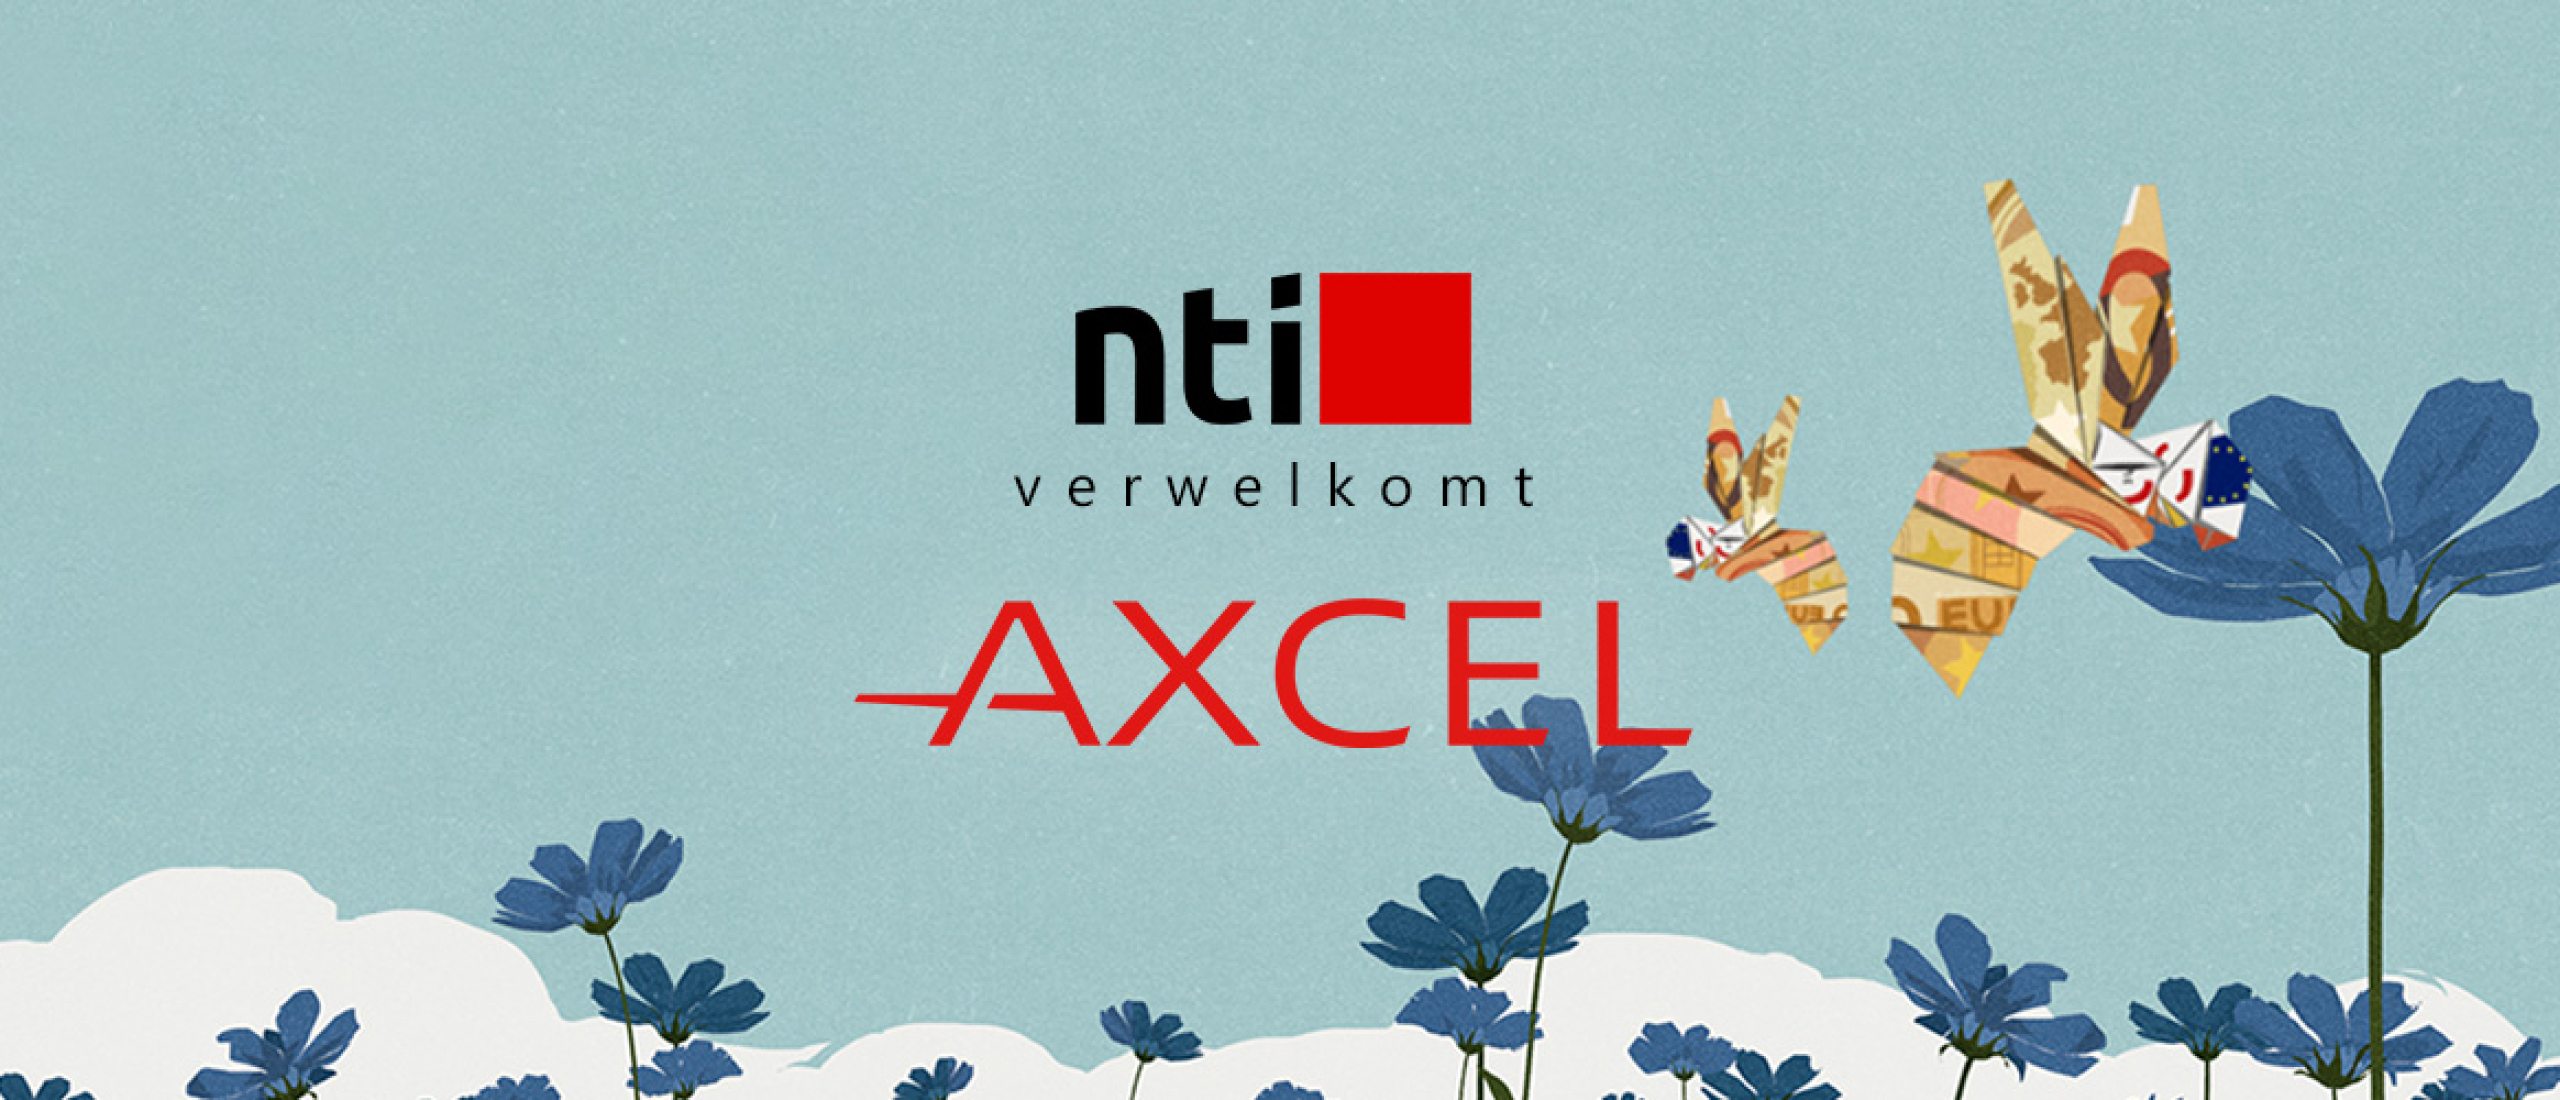 Axcel investeert in de NTI Group